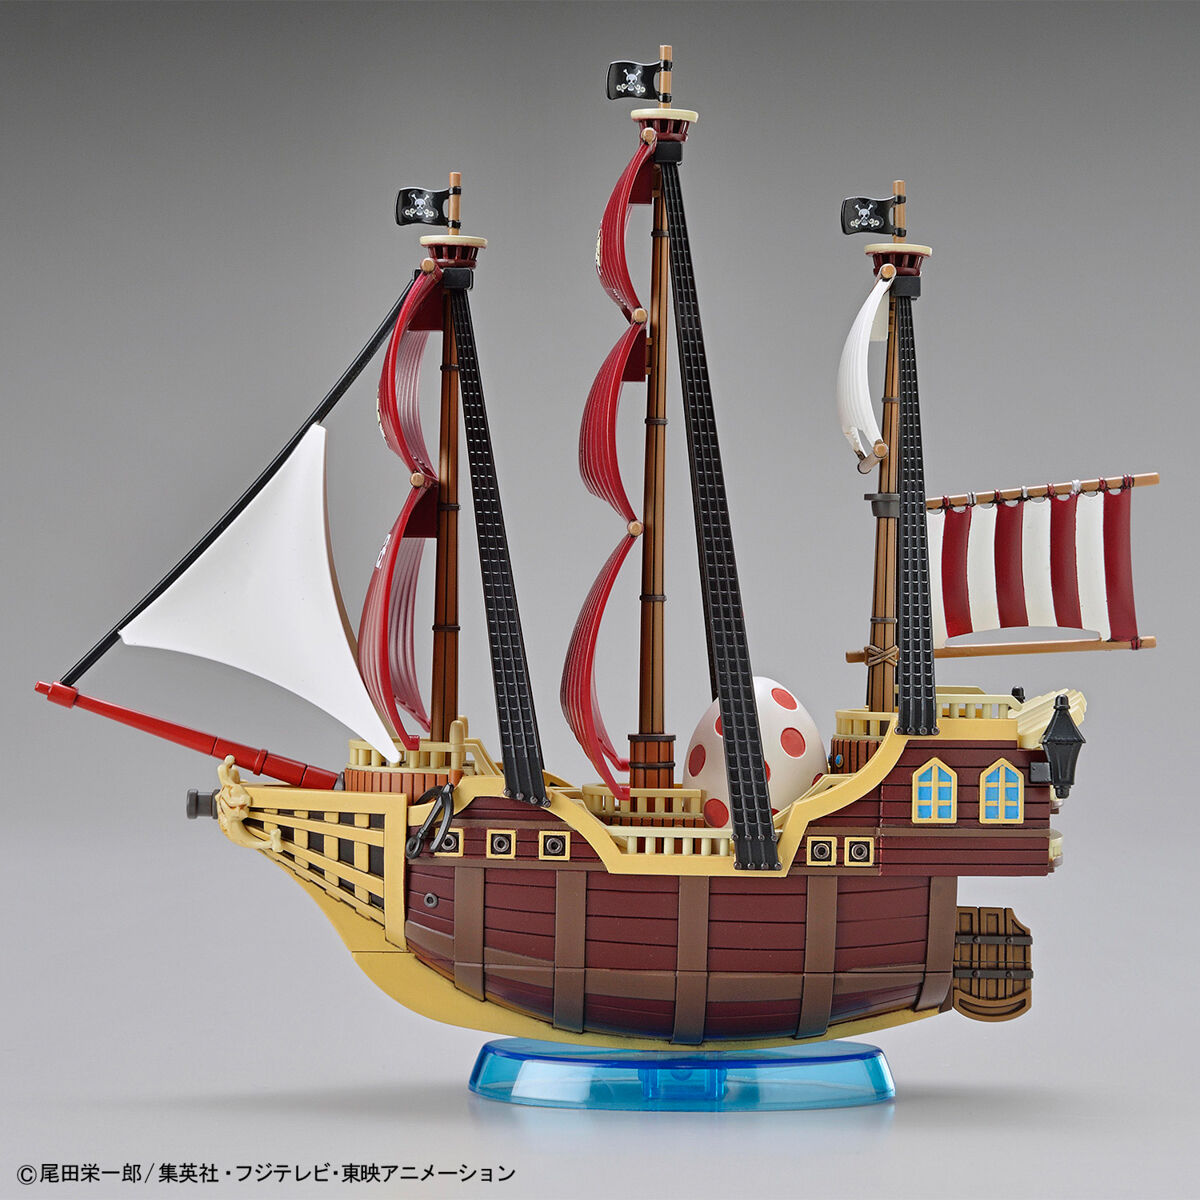 ワンピース偉大なる船(グランドシップ)コレクション オーロ・ジャクソン号 04